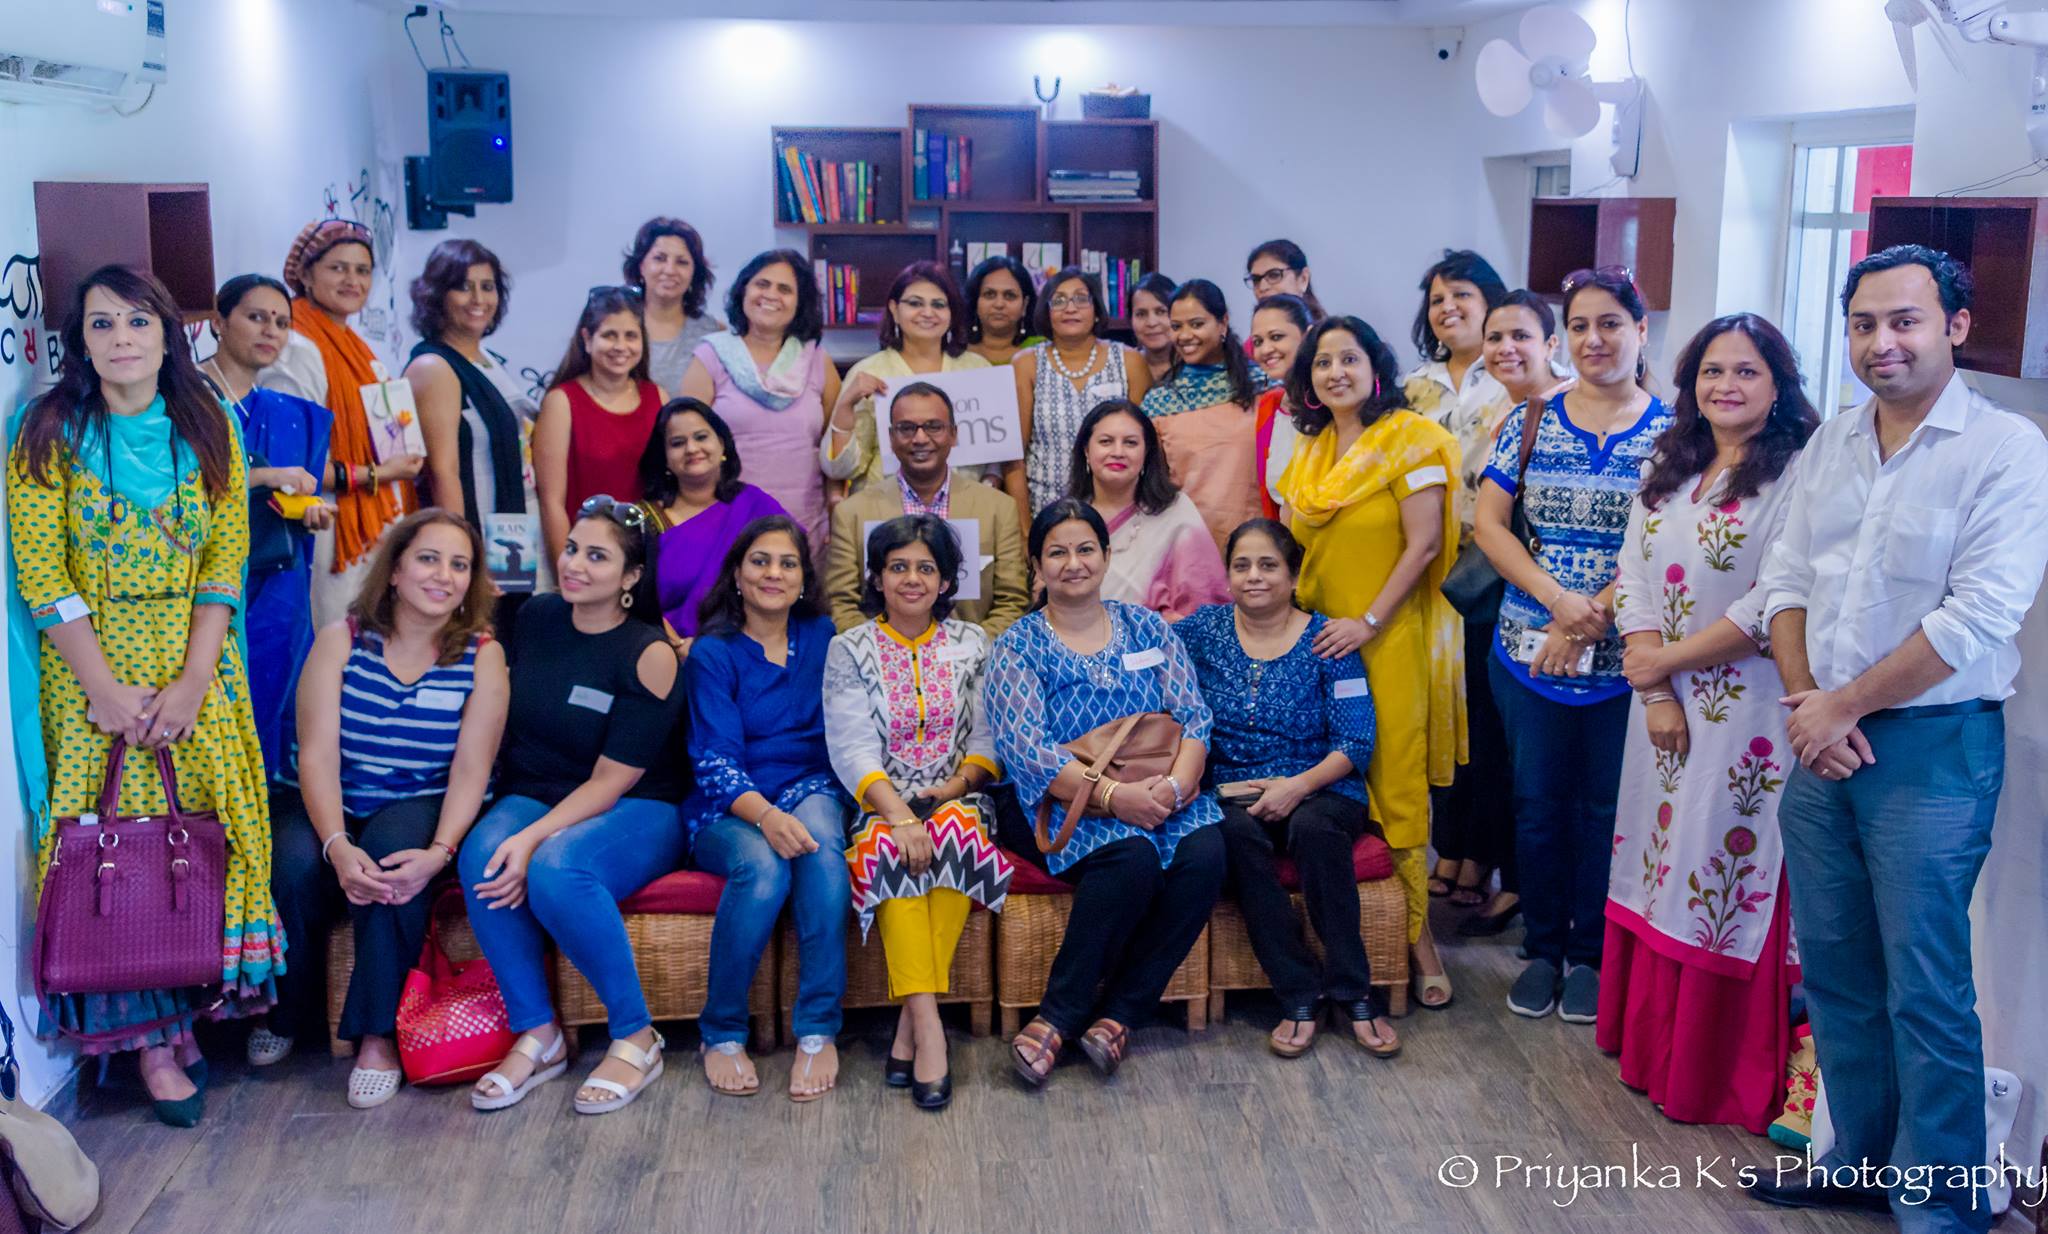 ‘LiTrio’ meet-up – A GurgaonMoms Book Club Event